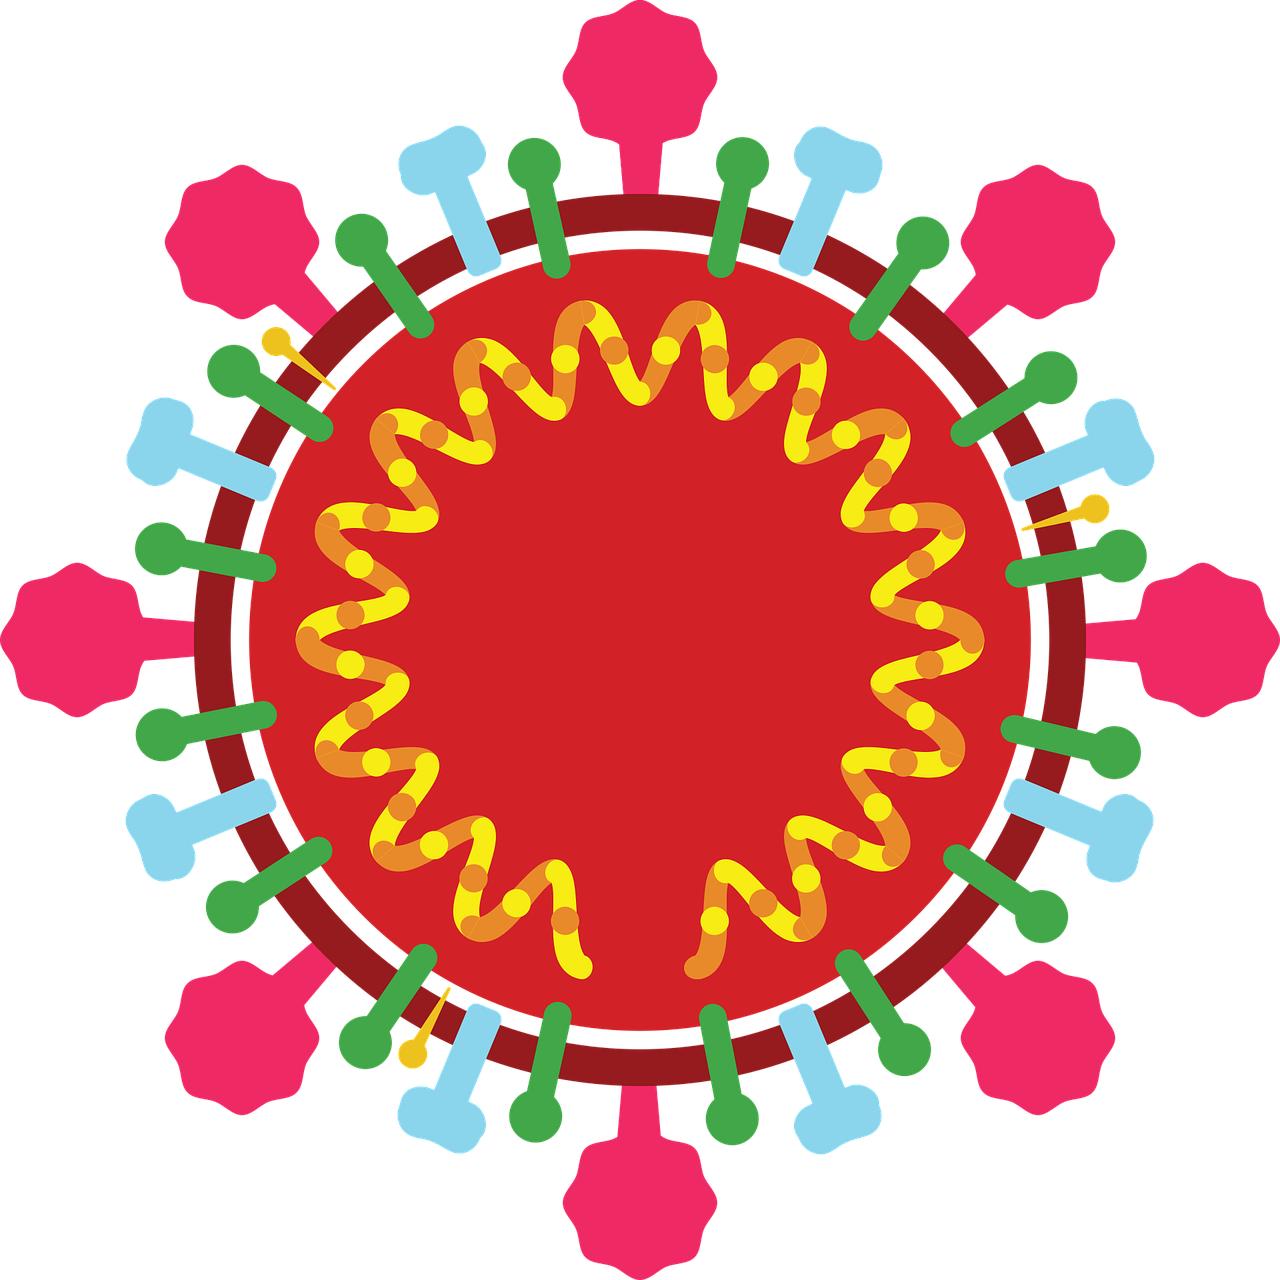 新型冠状病毒(2019-nCoV)感染的肺炎诊疗快速建议指南(<font color="red">完整版</font>)